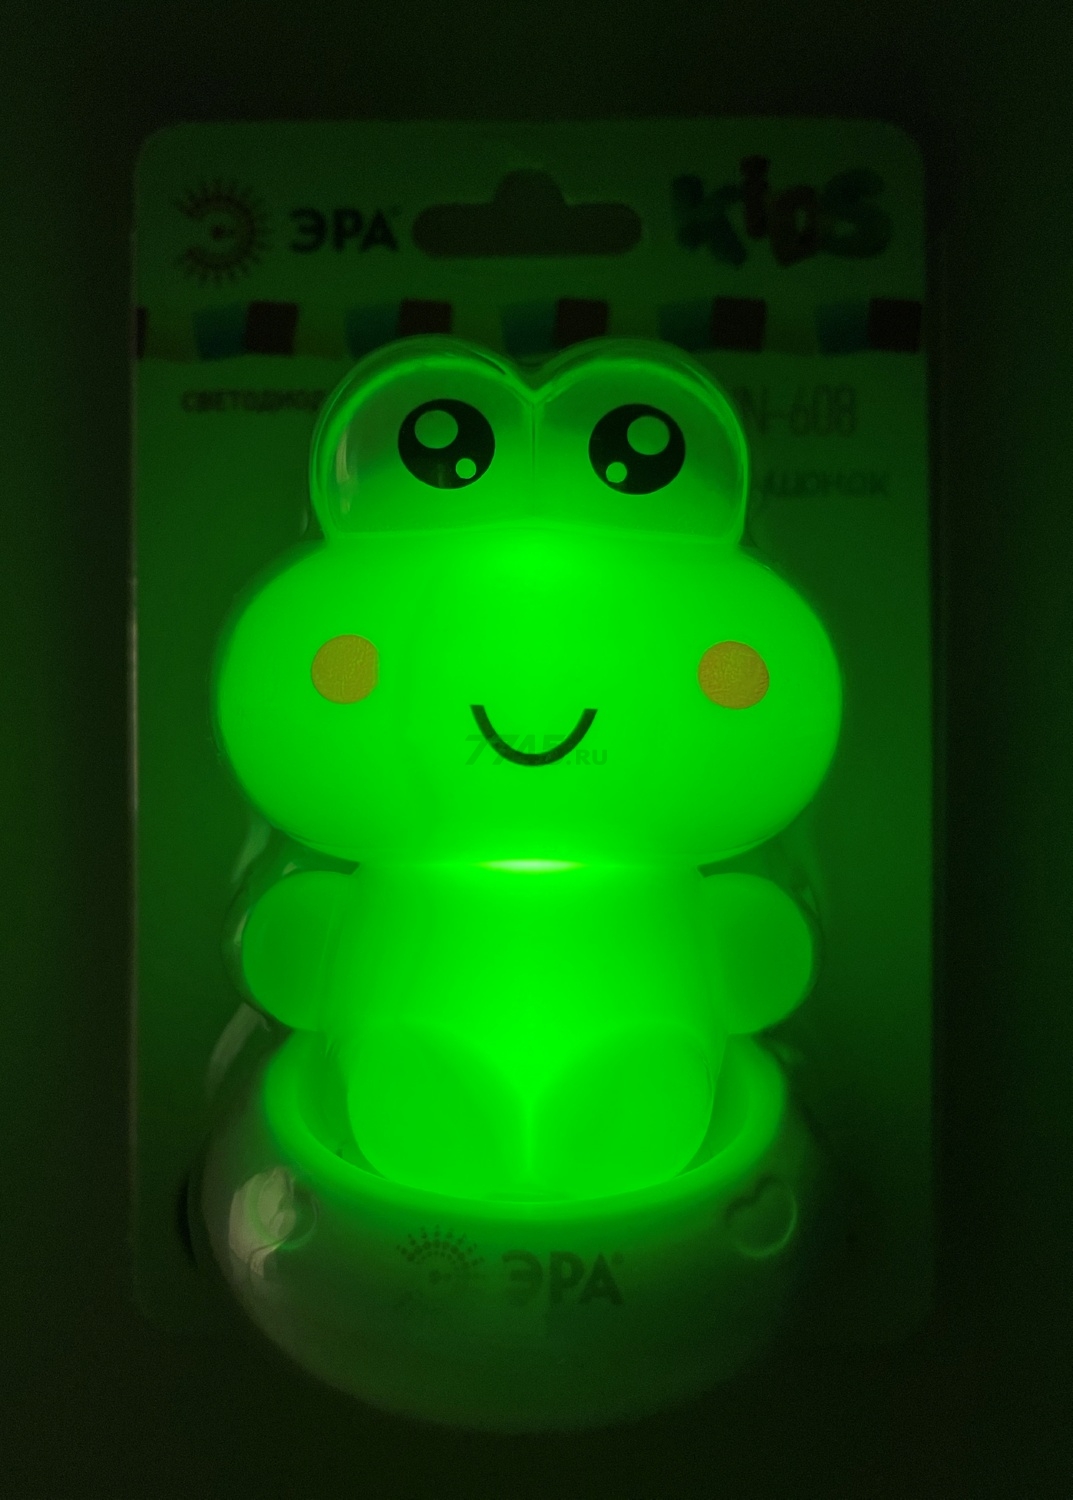 Ночник детский светодиодный ЭРА NN-608-SW-GR зеленый - Фото 9